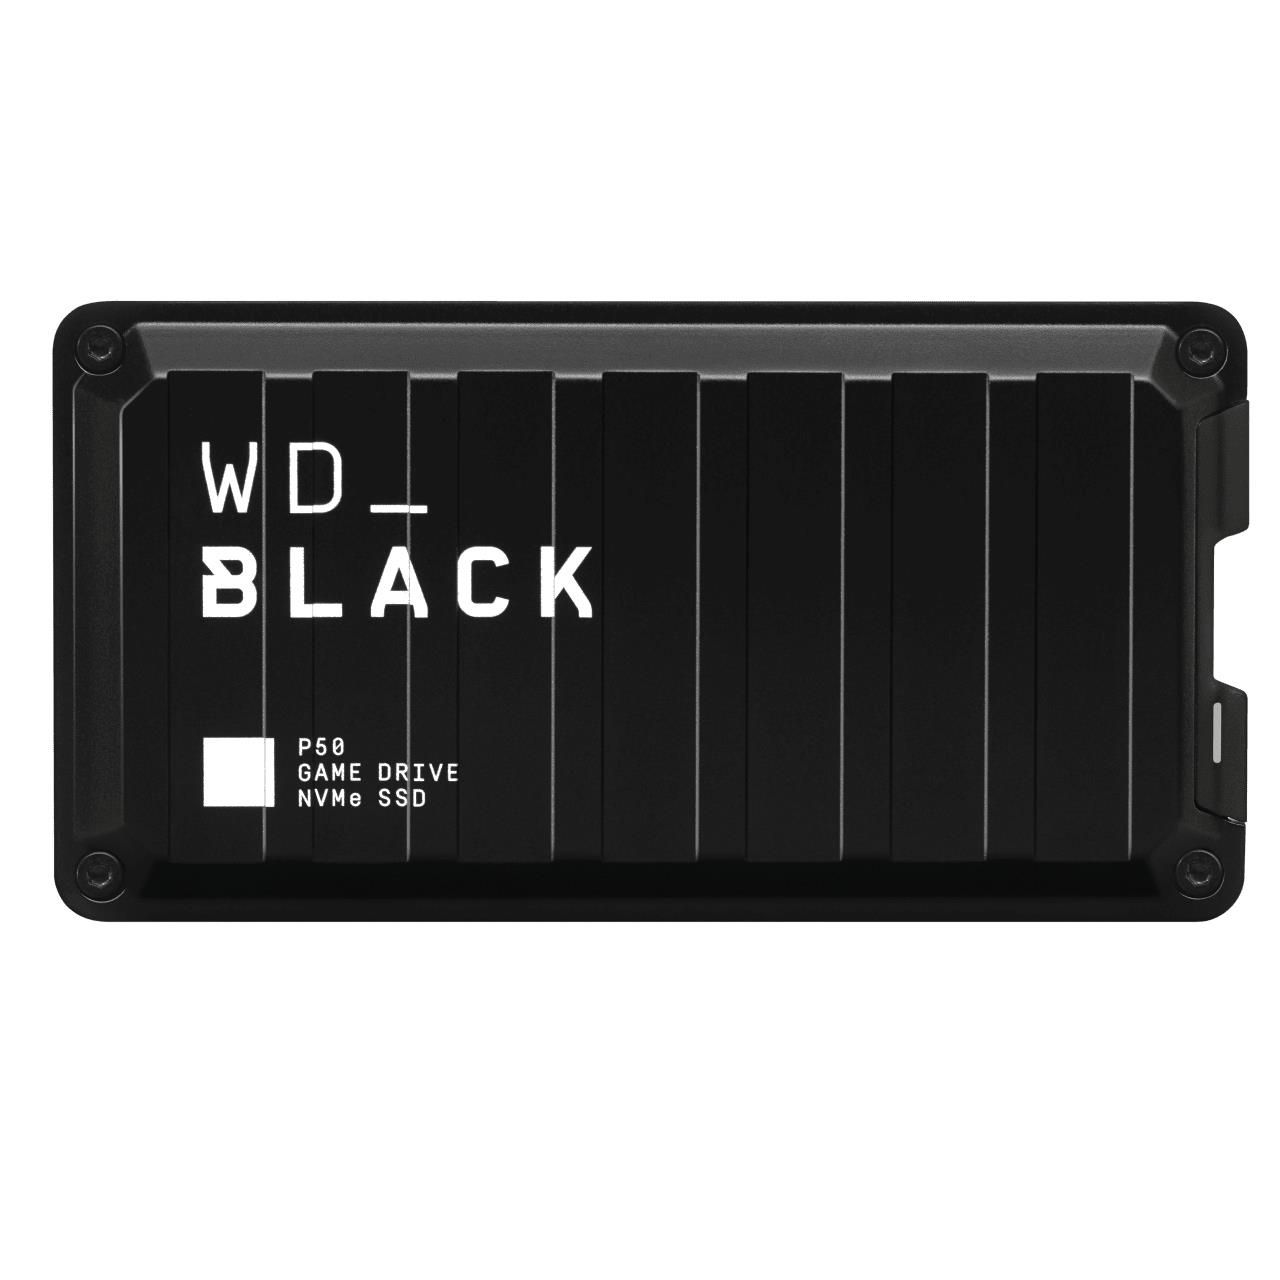 Sandisk WD_Black P50 Game